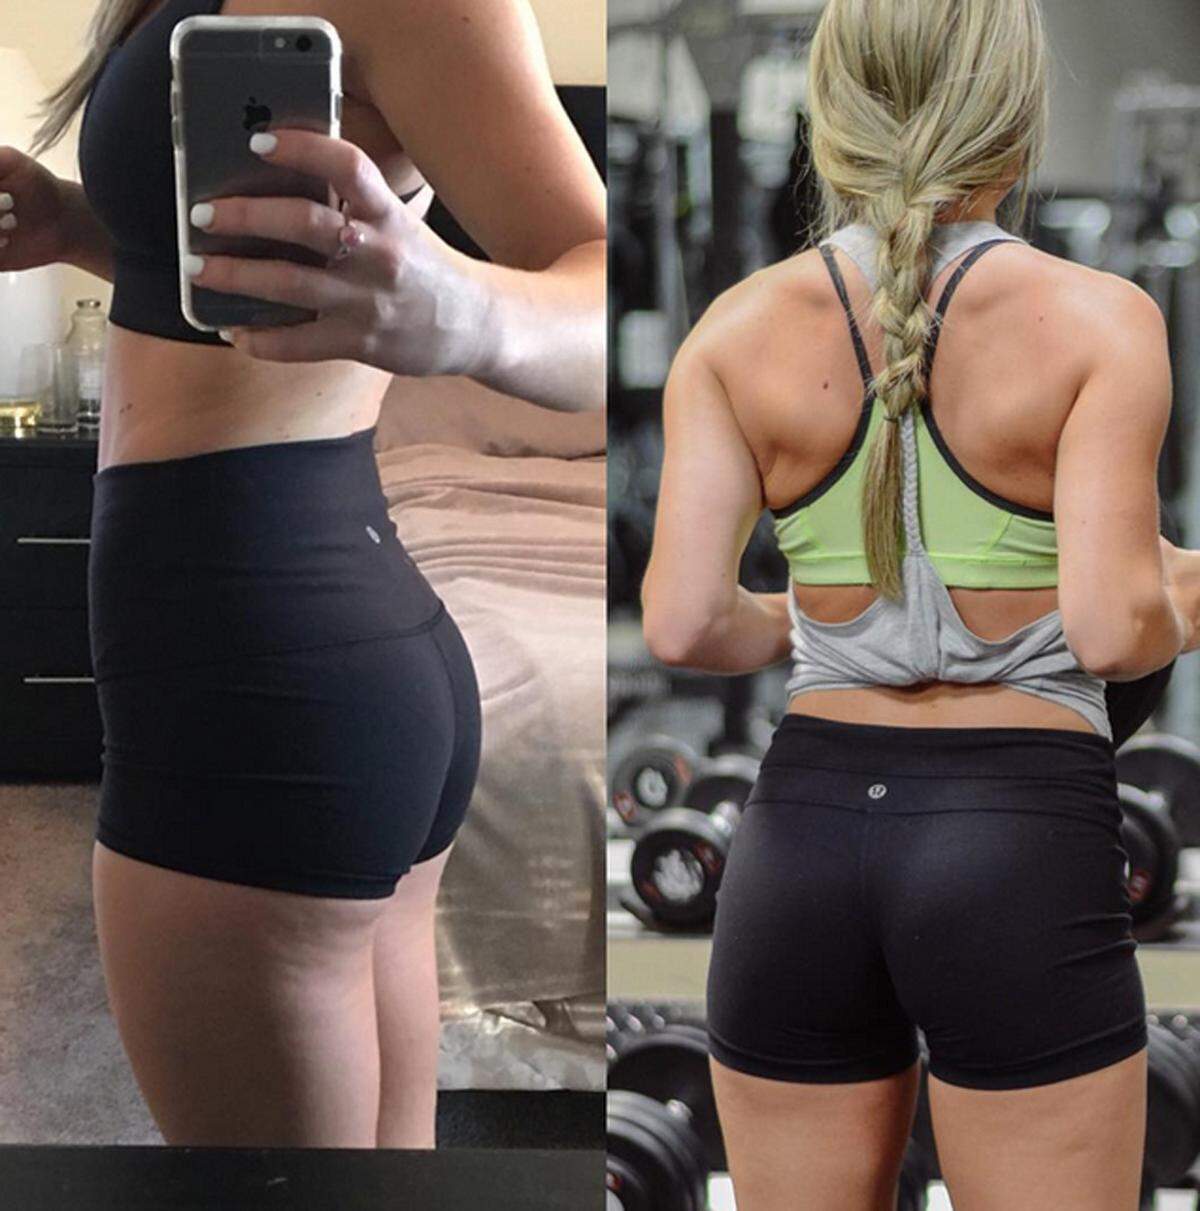 Fitness-Trainerin und Bloggerin Cristina Capron beweist, dass Cellulite nicht an zu wenig Sport oder ungesunder Ernährung liegt.